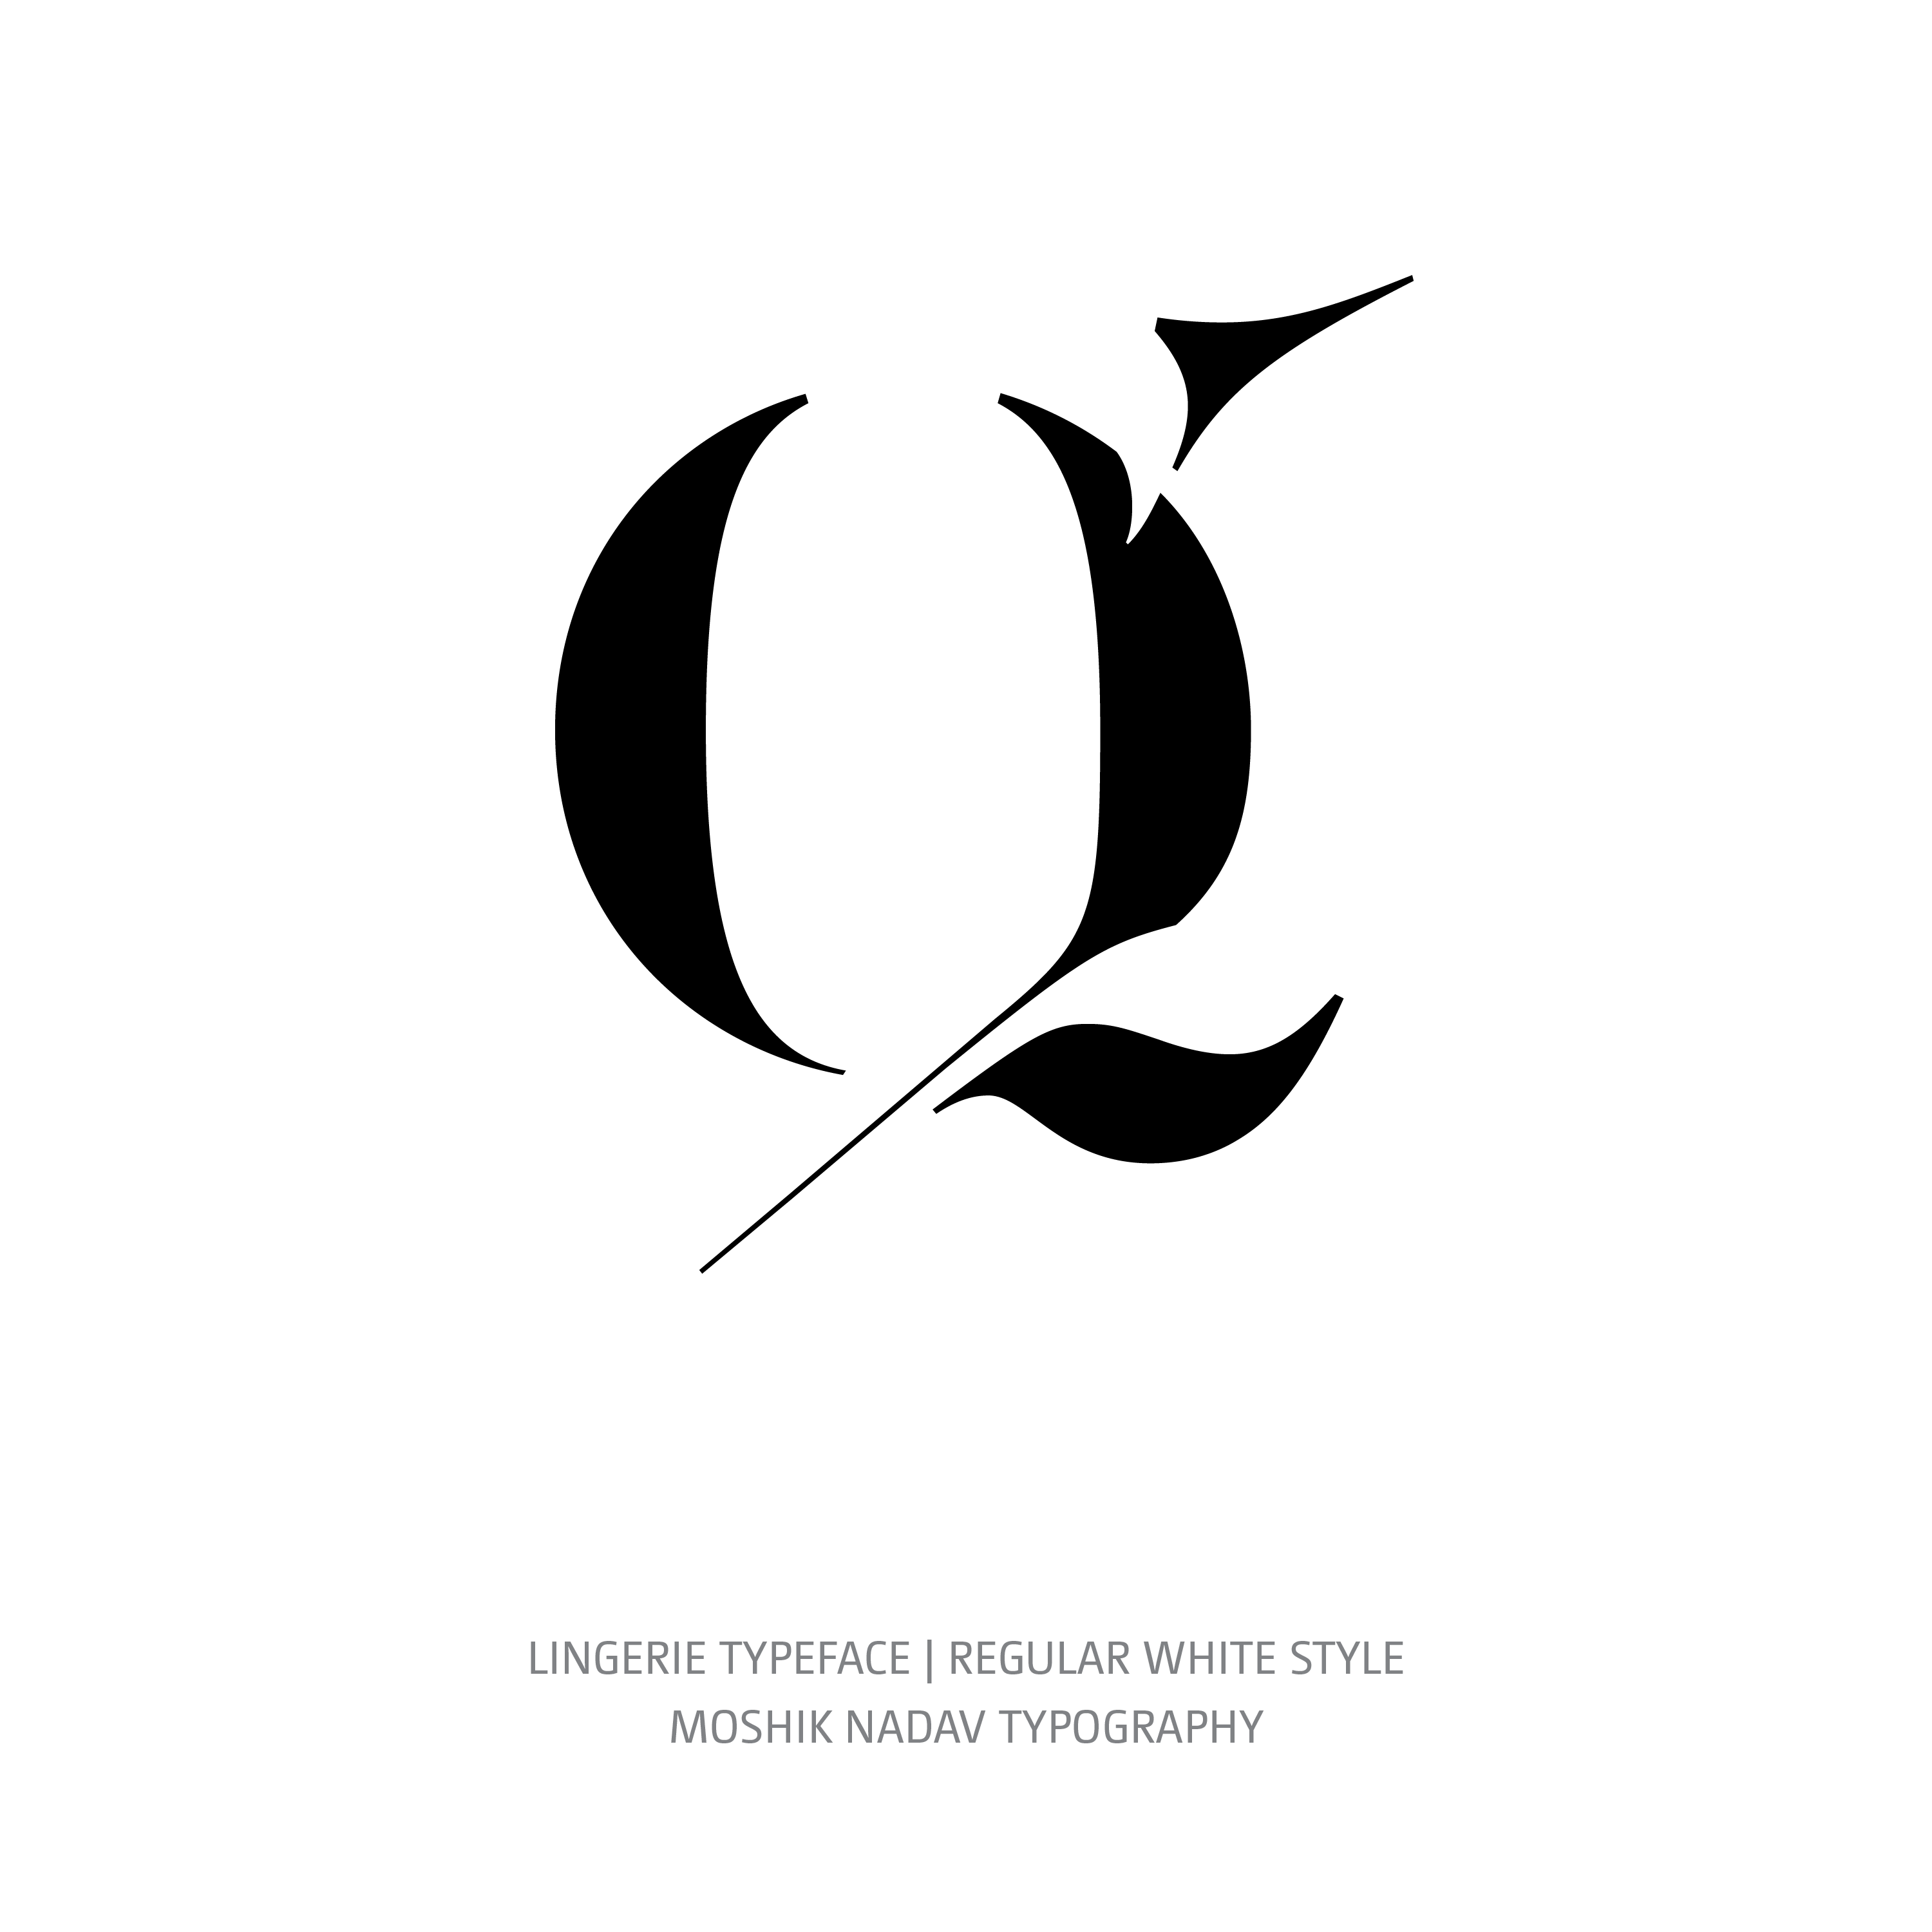 Lingerie Typeface Regular White q